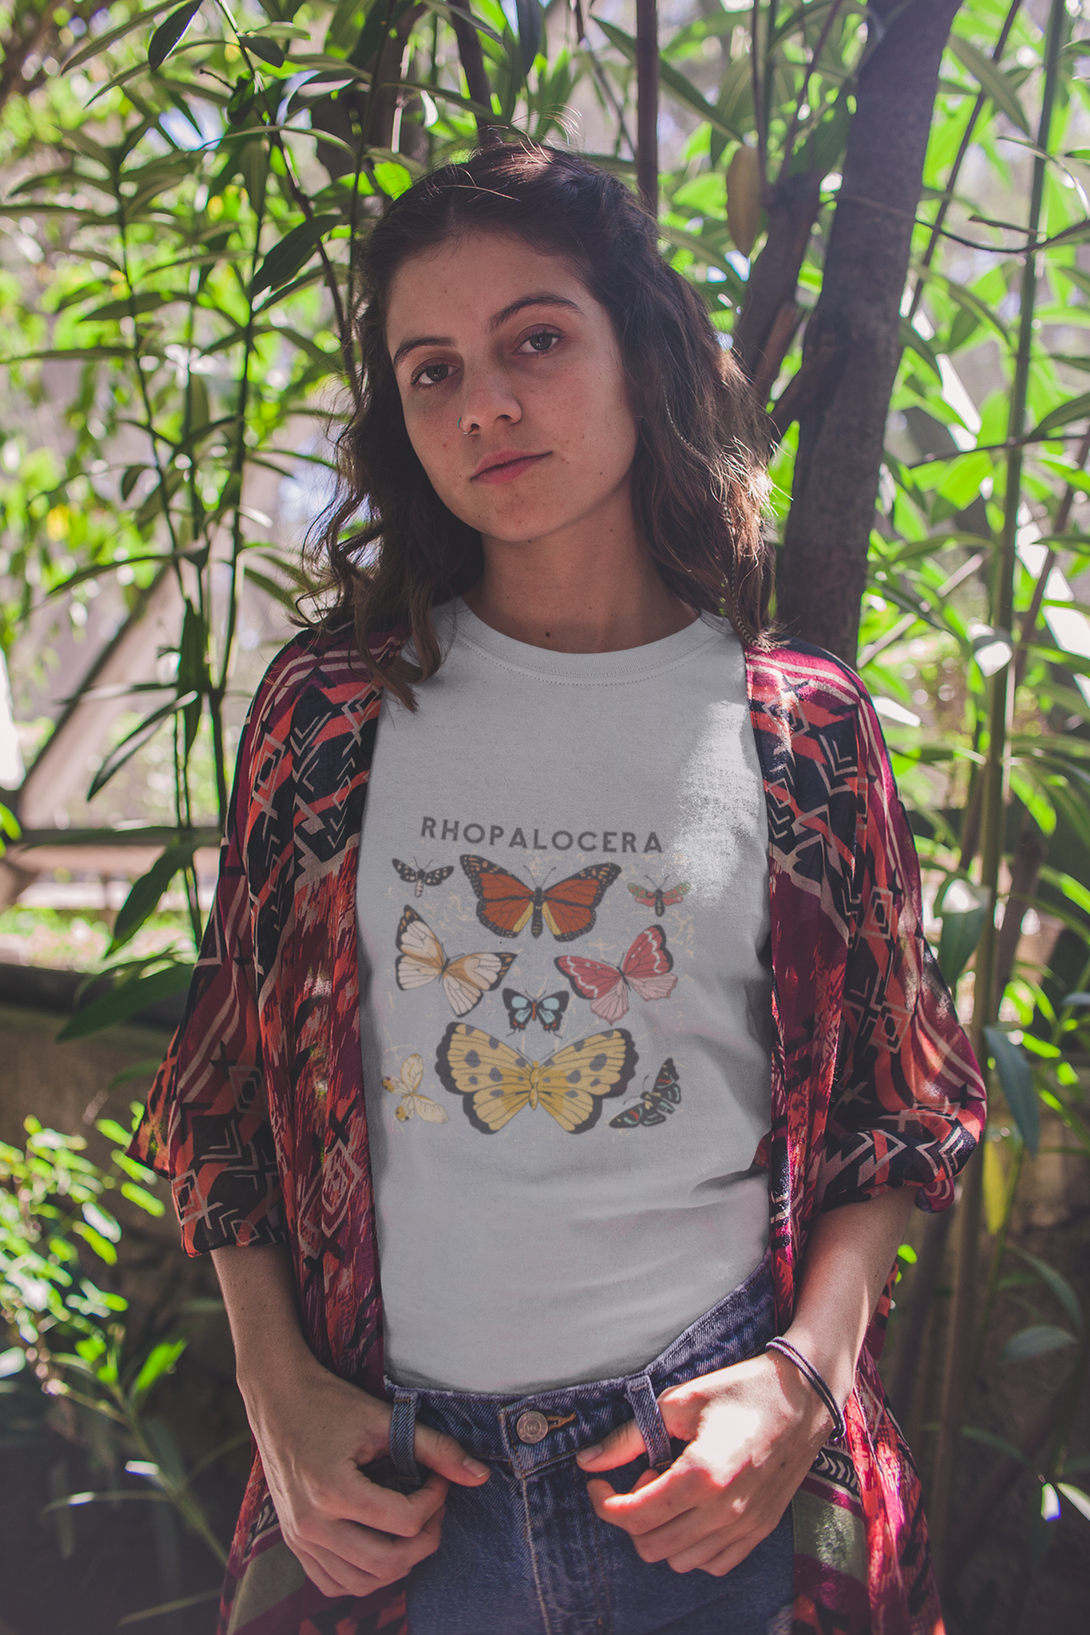 Rhopalocera Printed T-Shirt For Women - WowWaves - 3